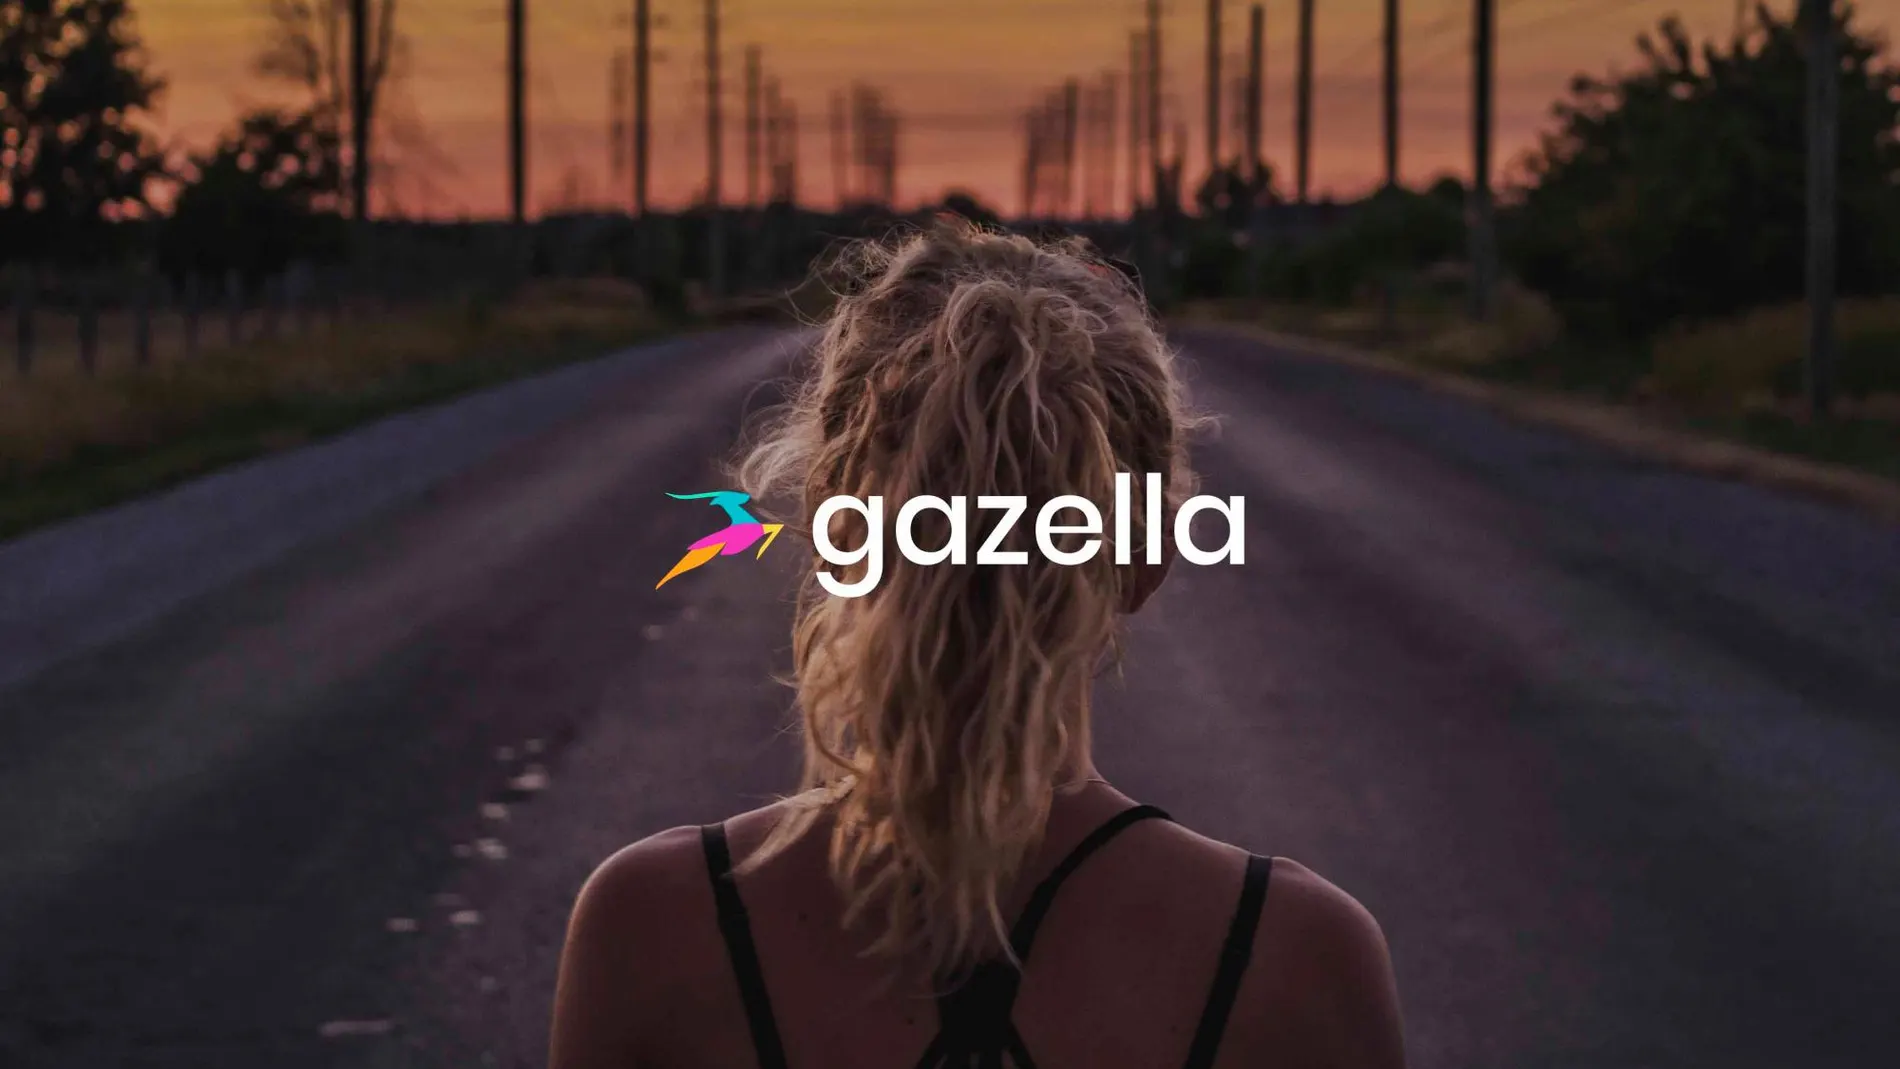 Llega Gazella, la app de running pensada para mujeres